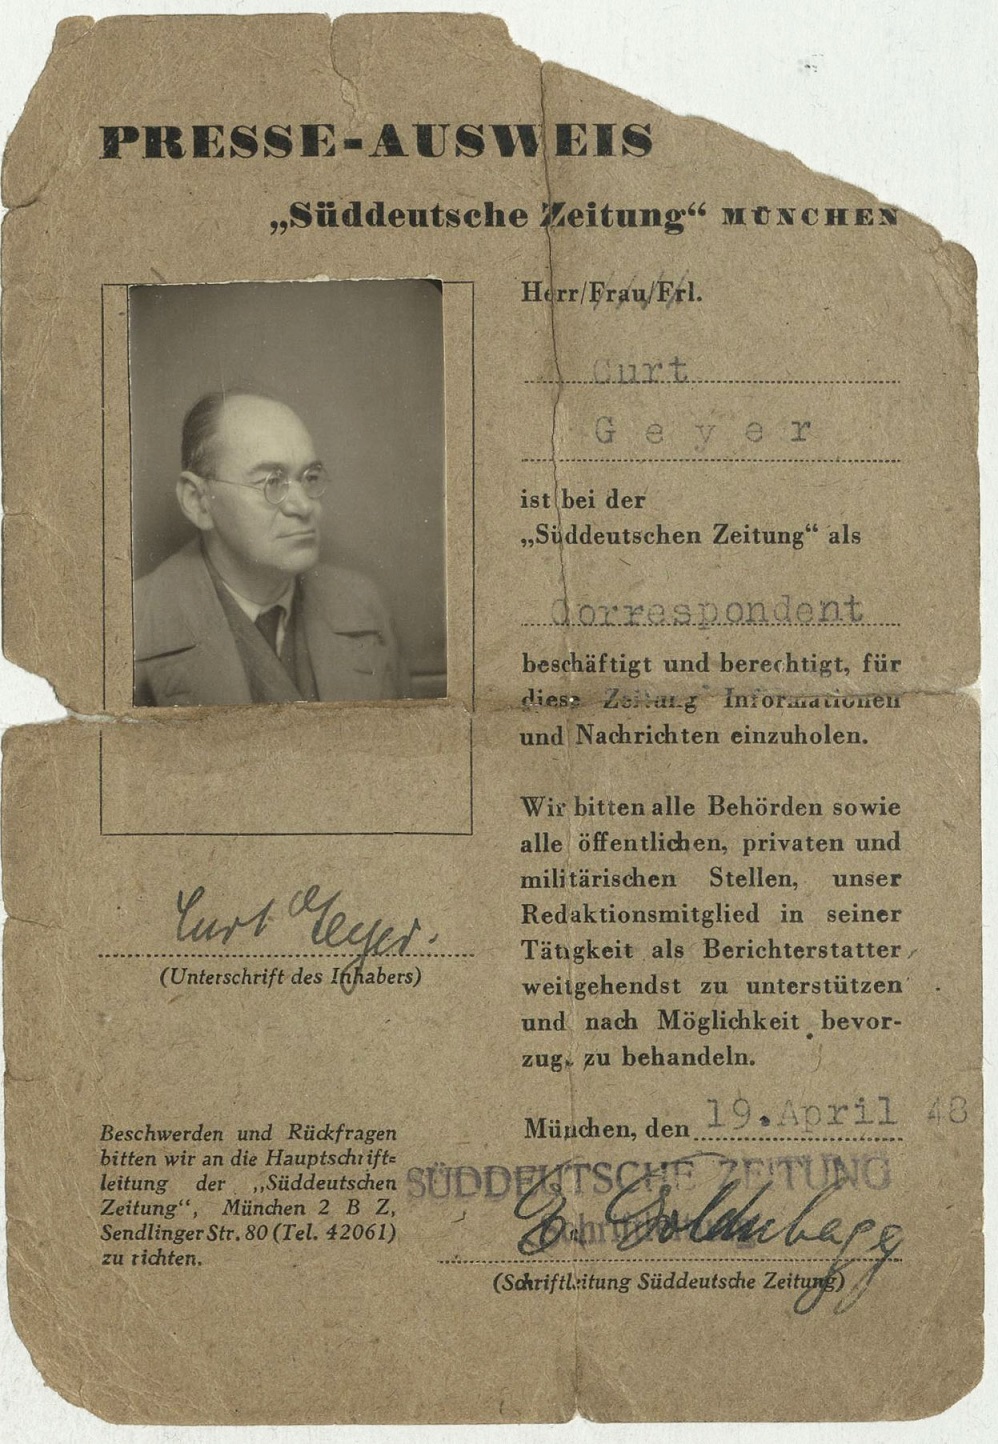  Curt Geyer, Presseausweis der „Süddeutschen Zeitung“, 19.4.1948, Vorderseite, Quelle: Deutsche Nationalbibliothek, Deutsches Exilarchiv 1933–1945, Frankfurt am Main, Fotograf(in): unbekannt.